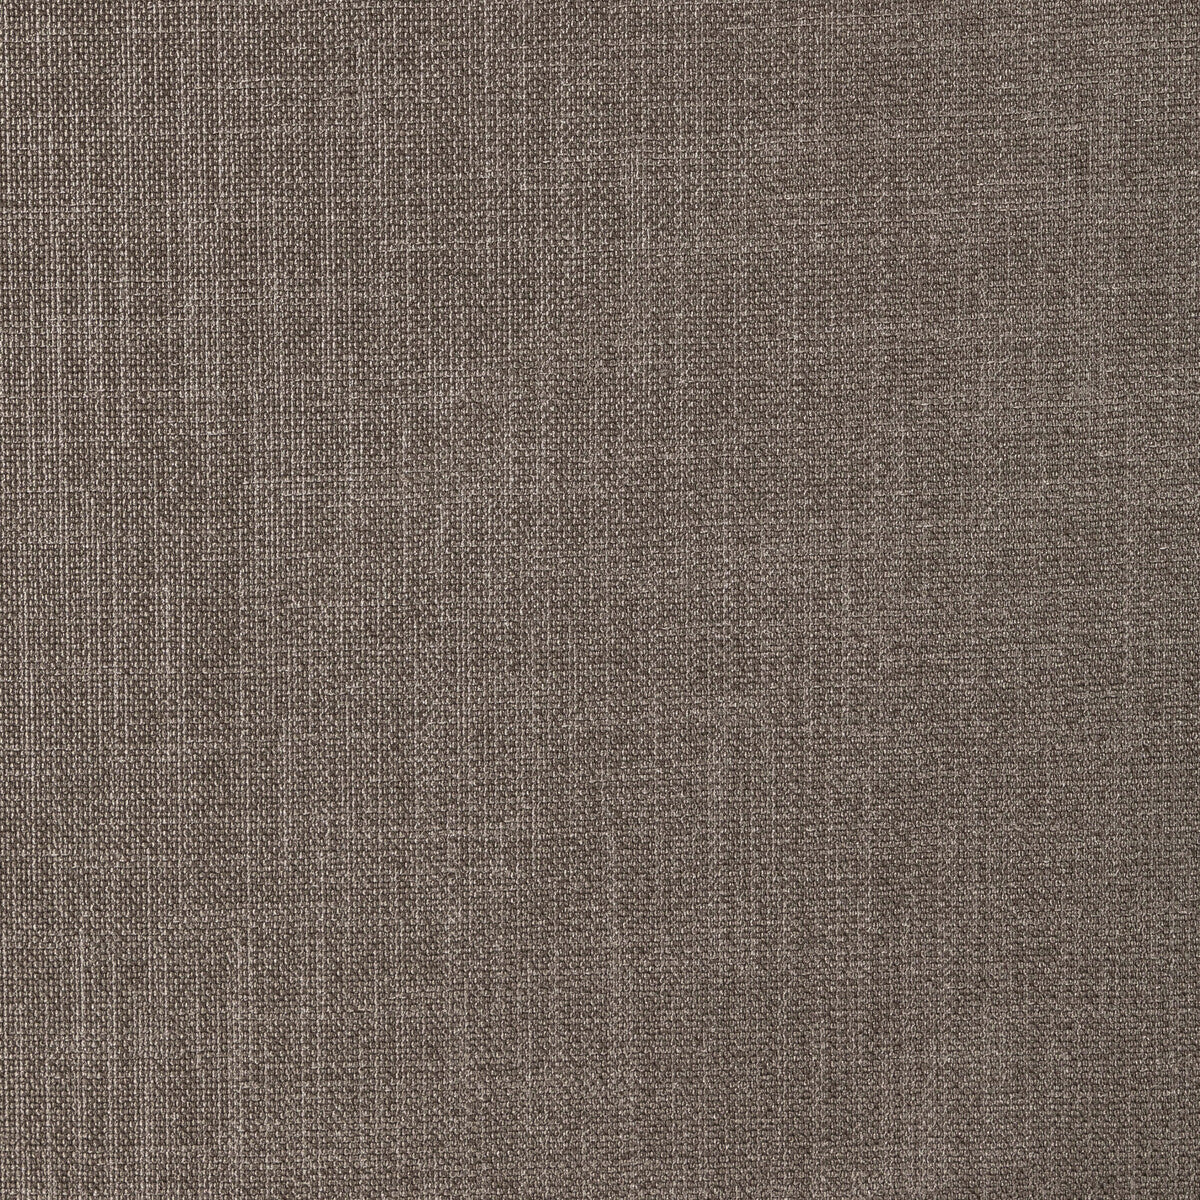 Kravet Basics fabric in 33120-166 color - pattern 33120.166.0 - by Kravet Basics